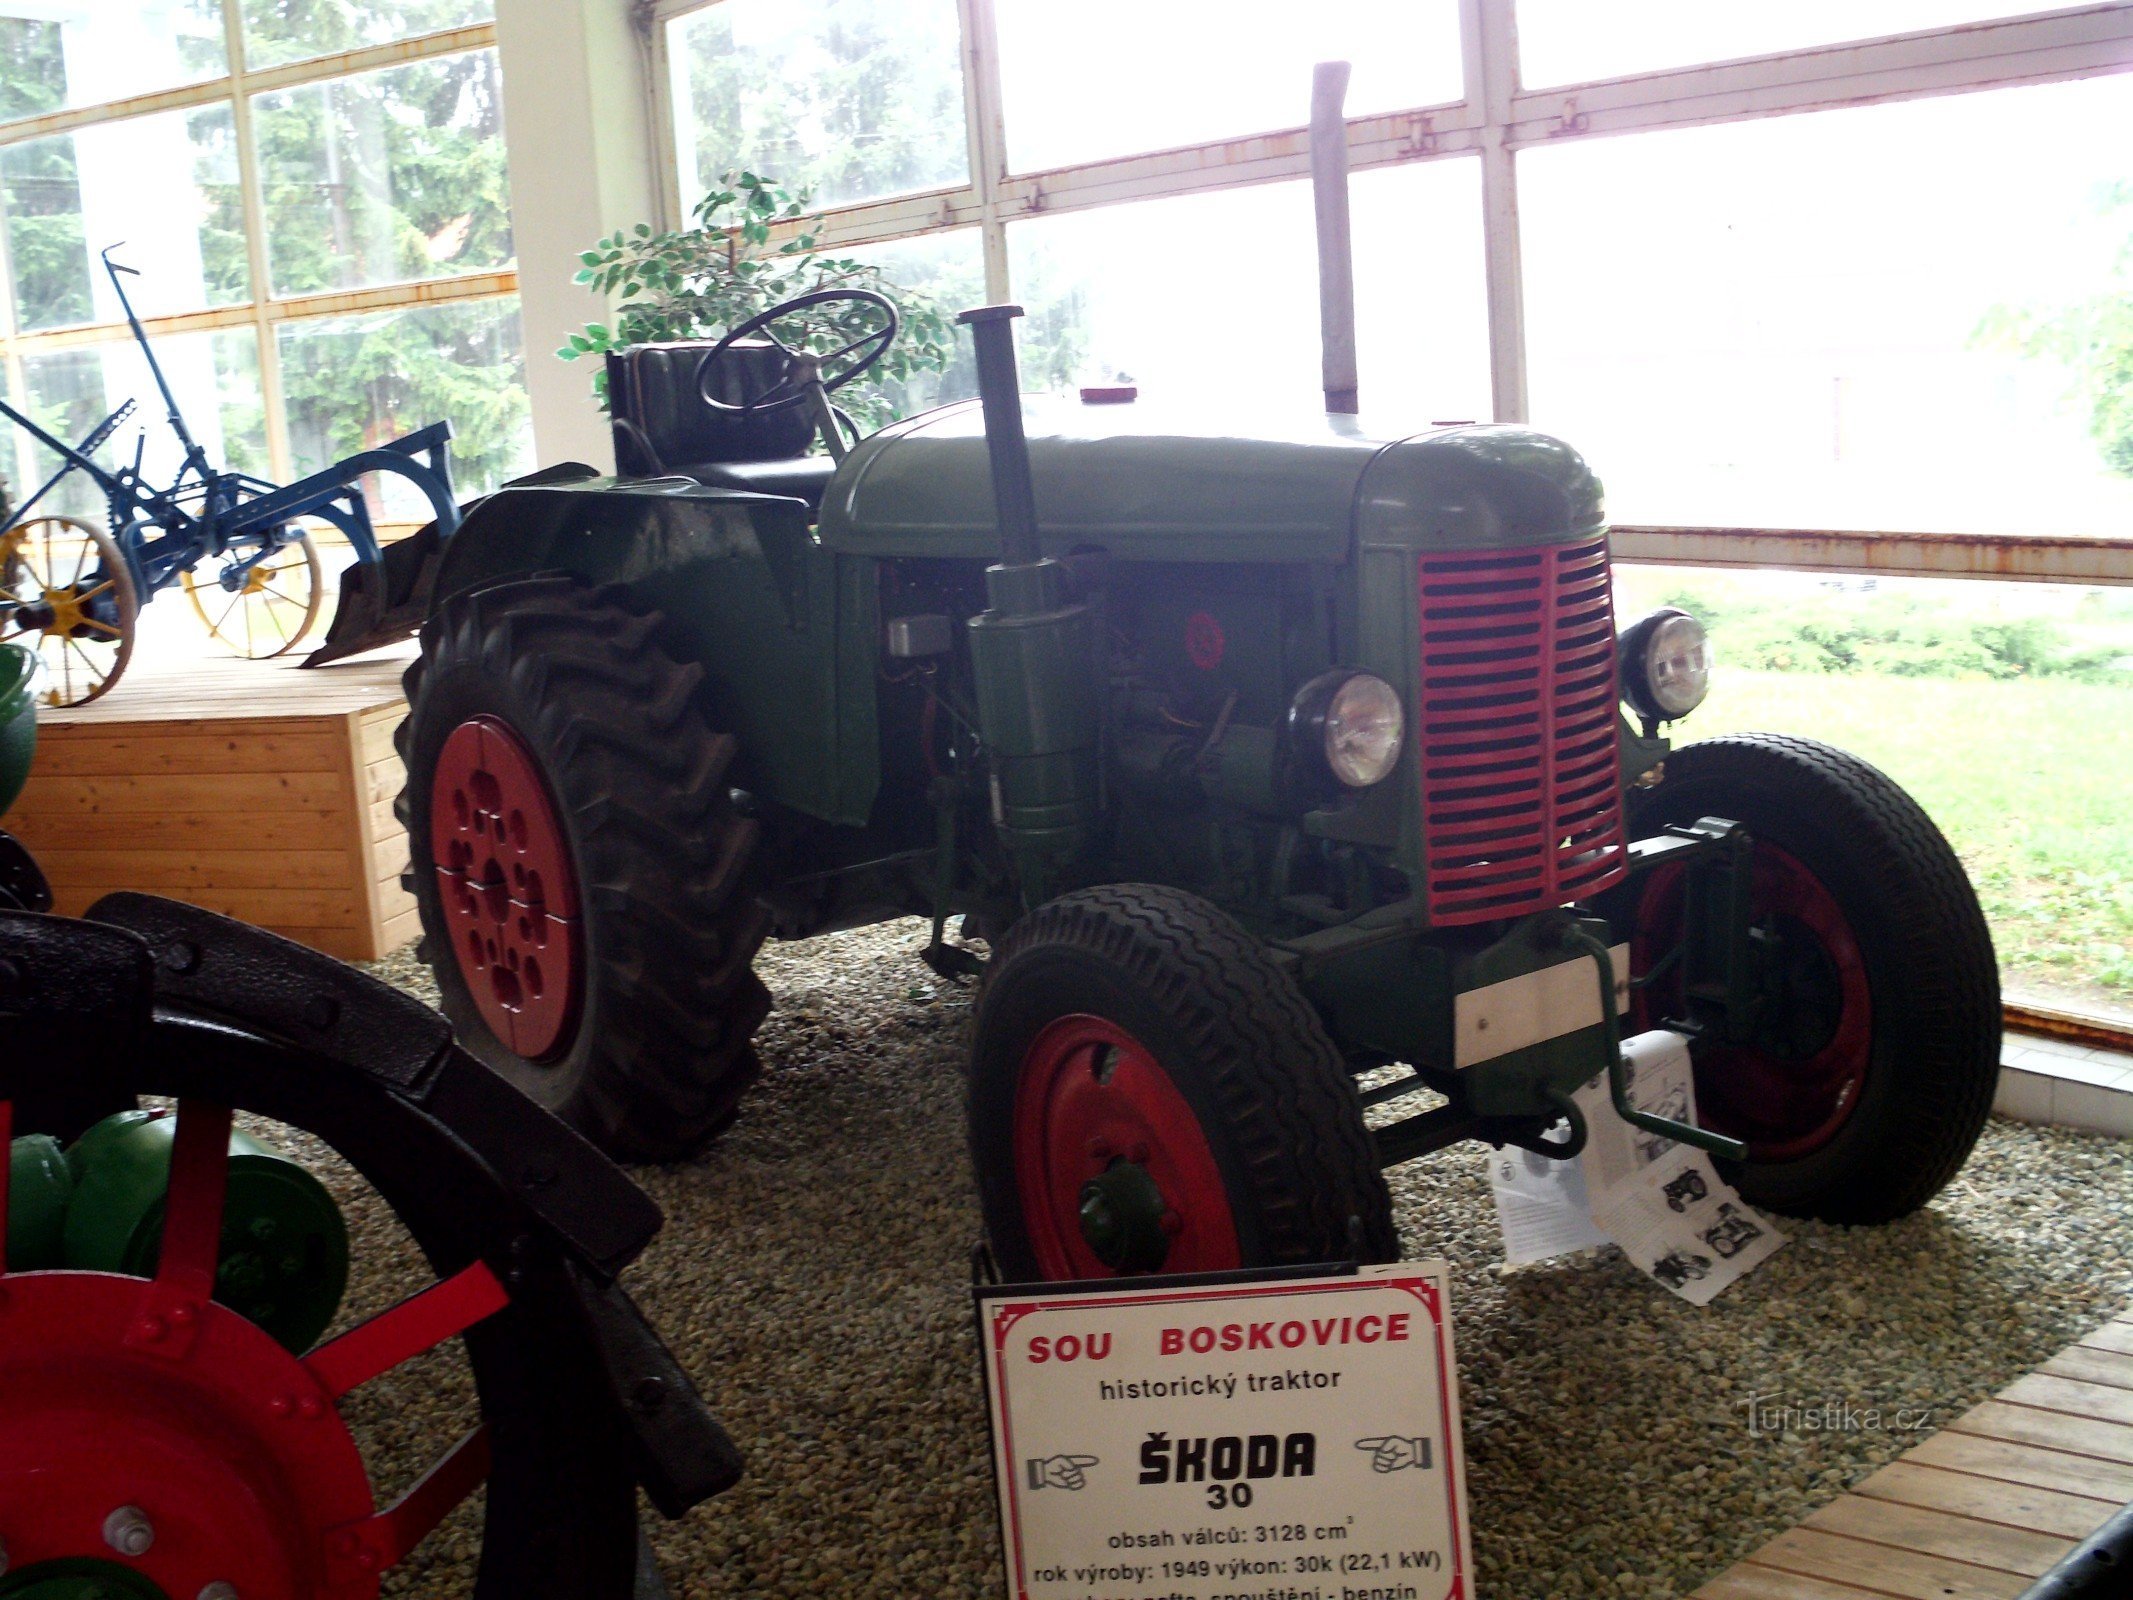 Il trattore Škoda 30 fu importante durante la collettivizzazione dell'agricoltura dopo la seconda guerra mondiale. guerra mondiale.